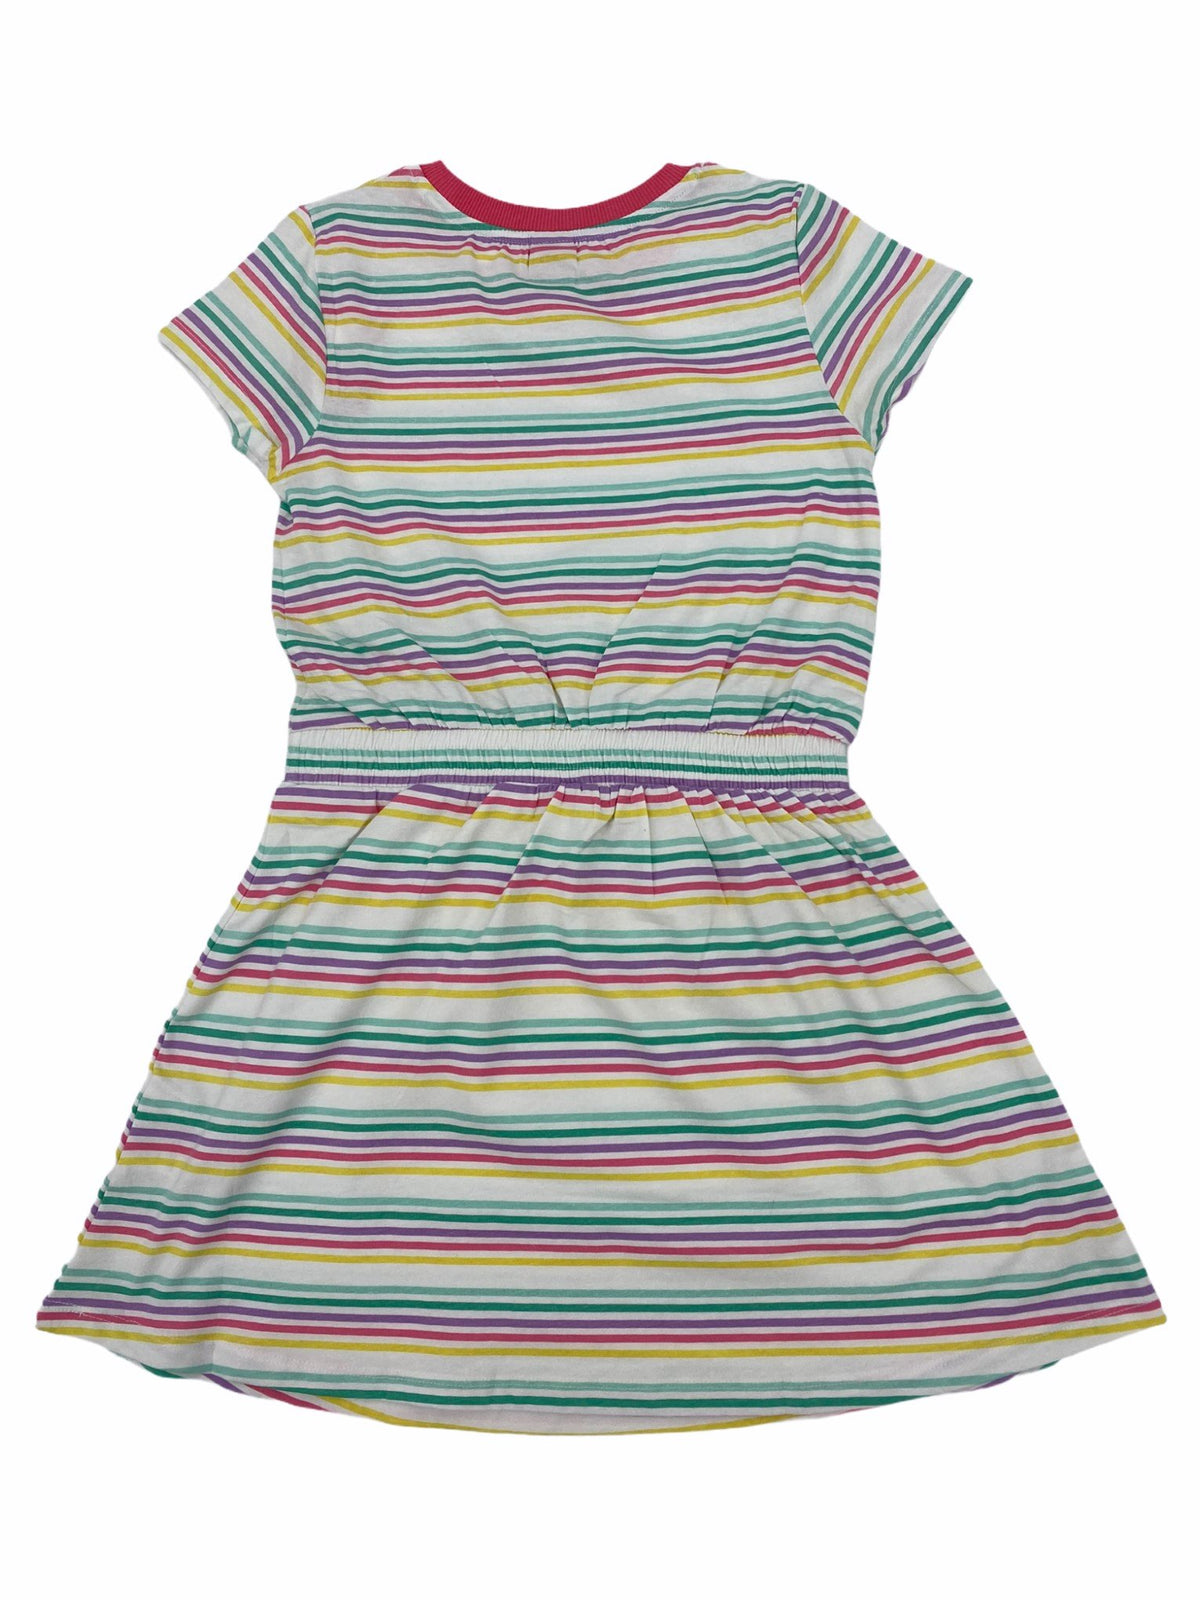 Robe Nasri - BG0636 8 C.STRIPE - Boutique Flos, vêtements pour bébés et enfants